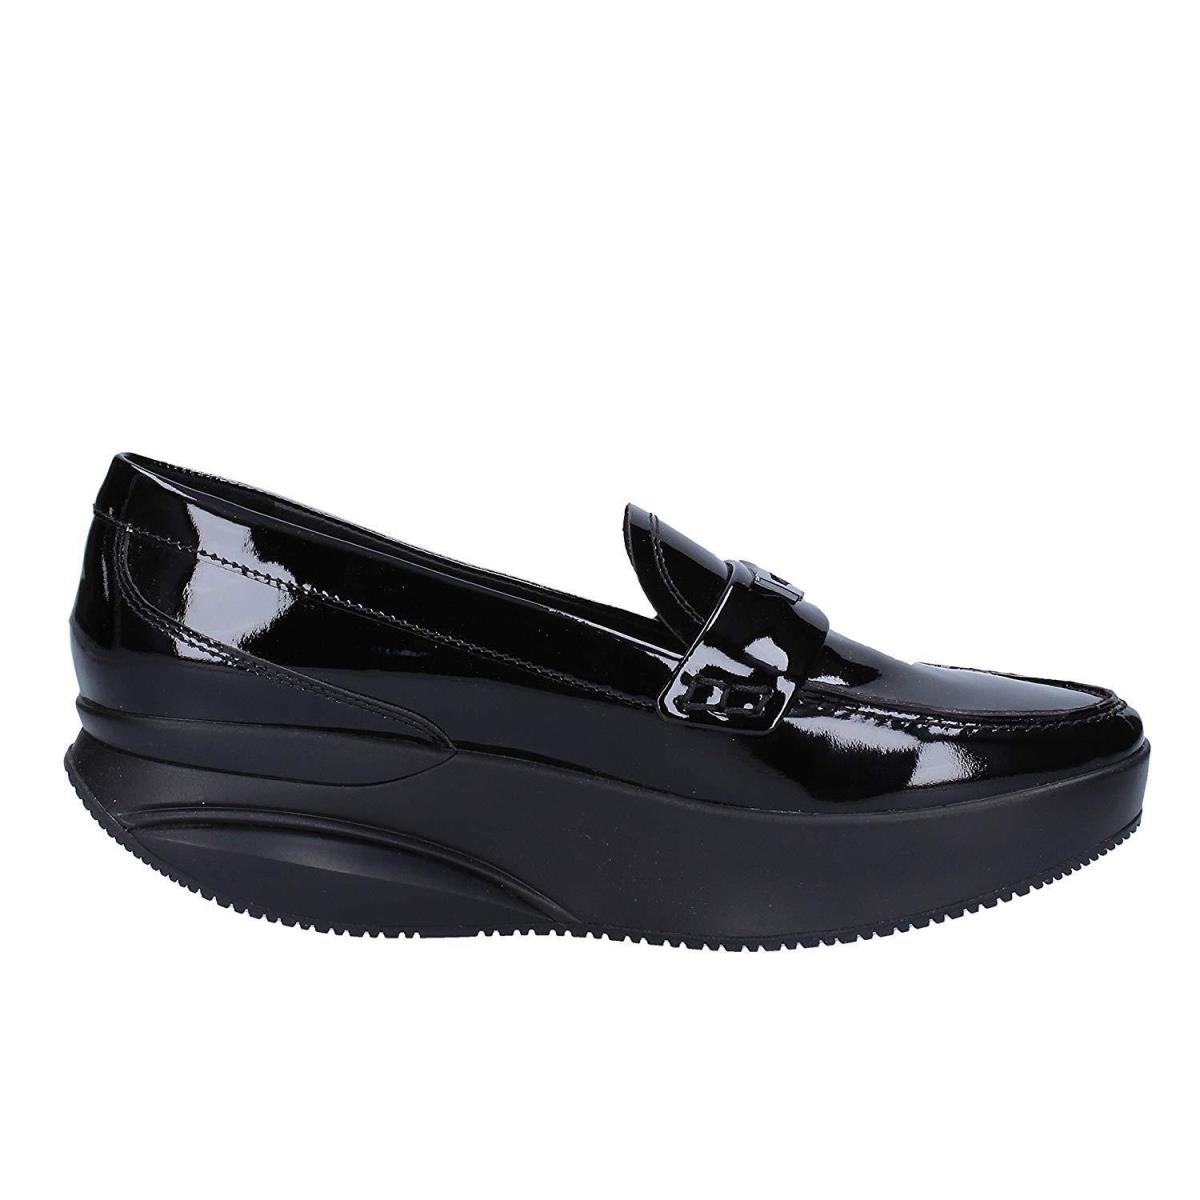 Mbt Jaha Women`s Slip-on Moc Loafer Black Patent Lthr W/ Rocker Sole Comfort